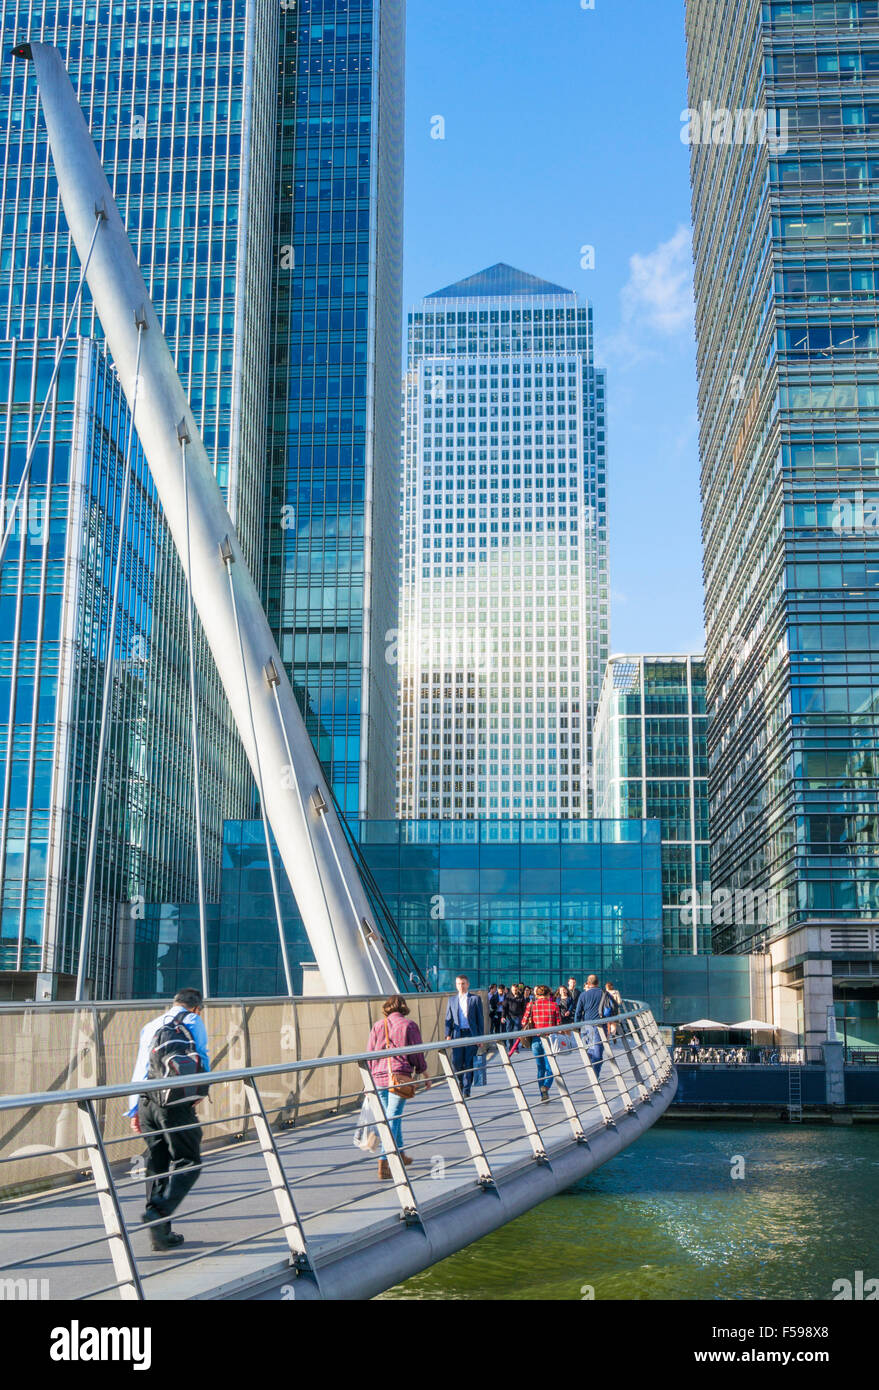 Canary Wharf gratte-ciel du quartier financier et bancaire de la CDB Docklands Londres Angleterre Royaume-uni GB EU Europe Banque D'Images